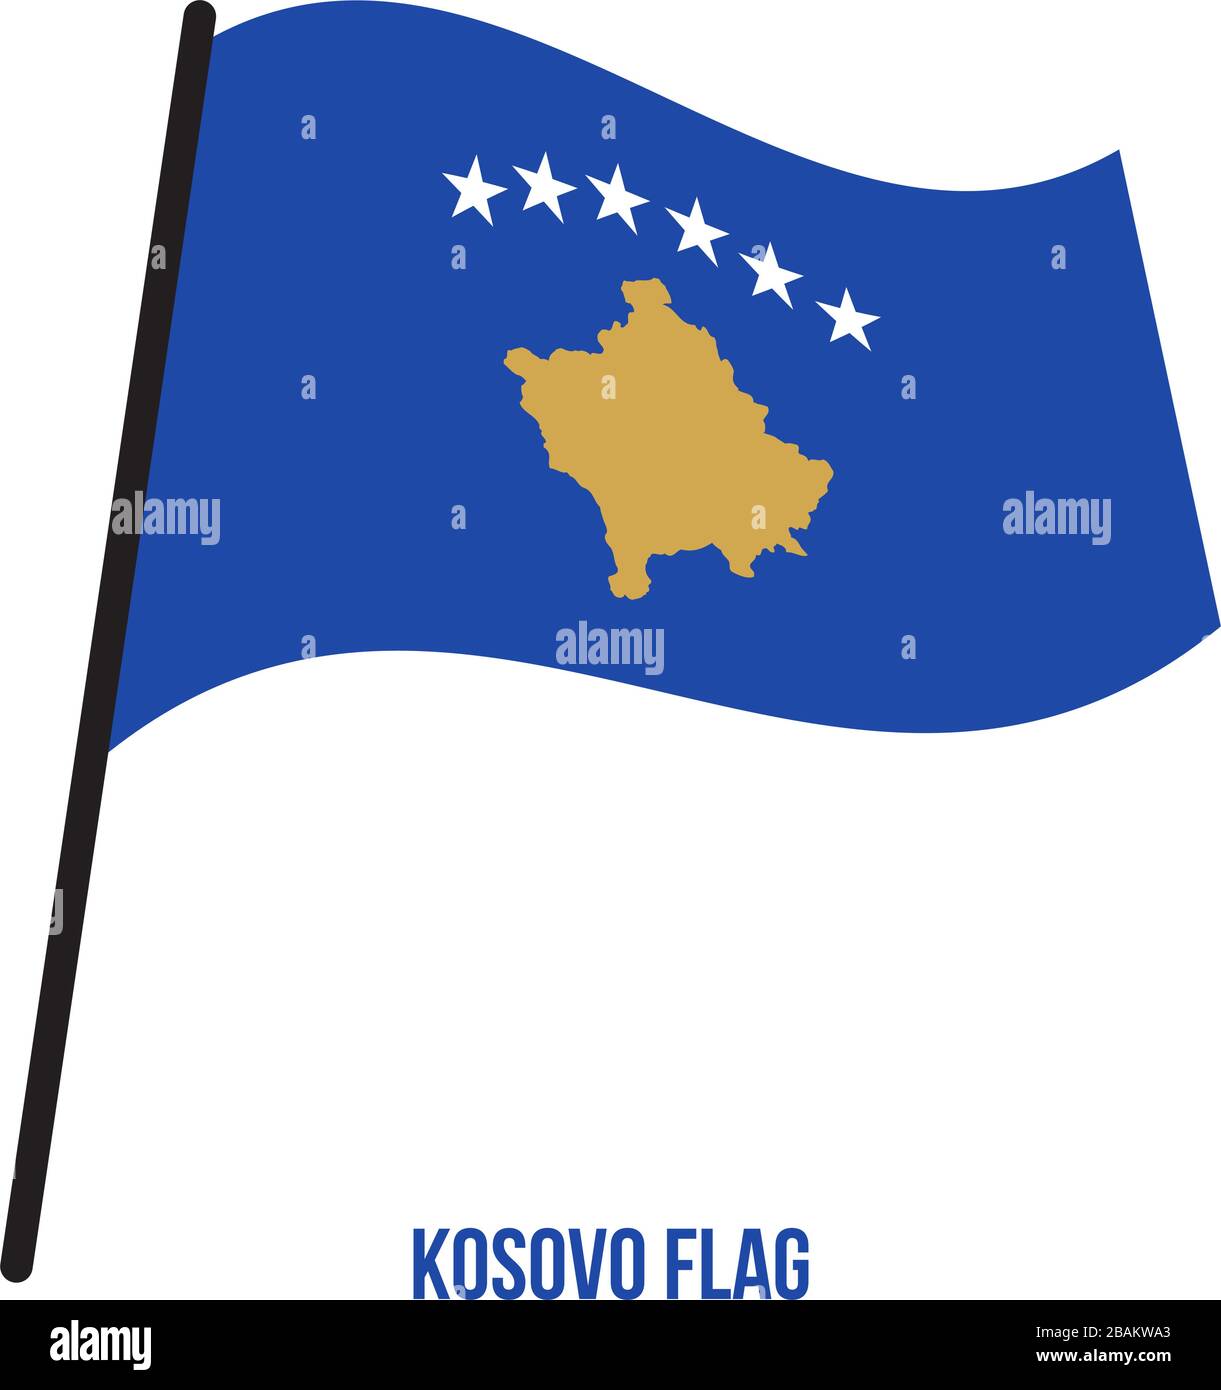 Kosovo Flagge schwenkten Vector Illustration auf weißem Hintergrund. Kosovo  Nationalflagge Stock-Vektorgrafik - Alamy